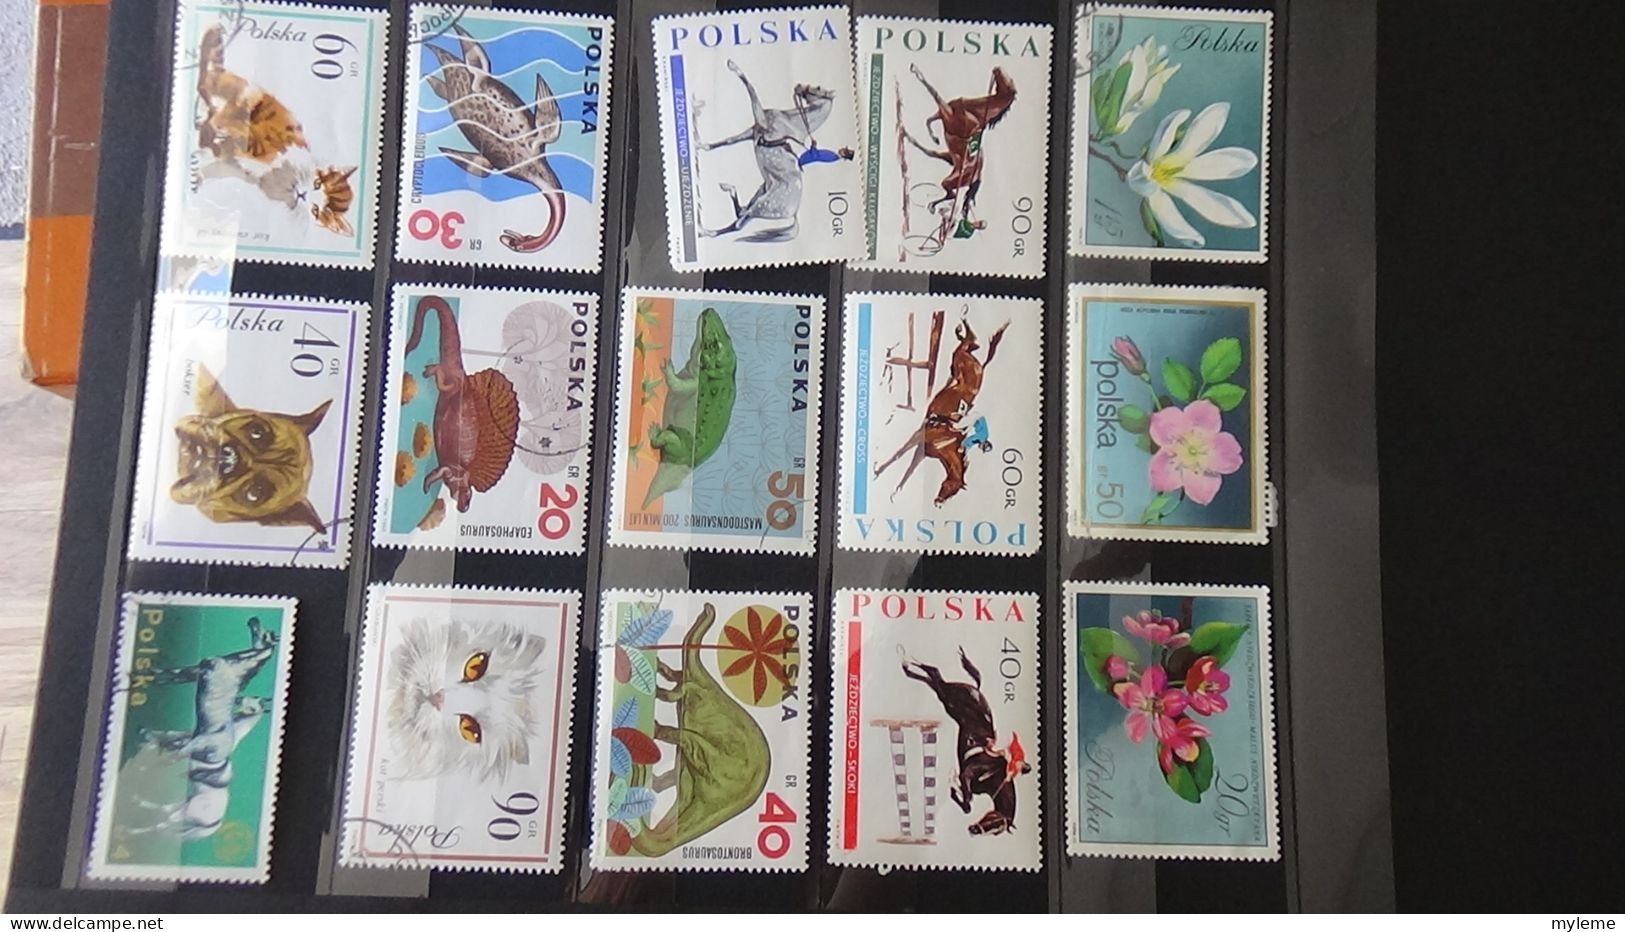 BF12 Ensemble de timbres de divers pays + plaquette de France **. Cote sympa  A saisir !!!.